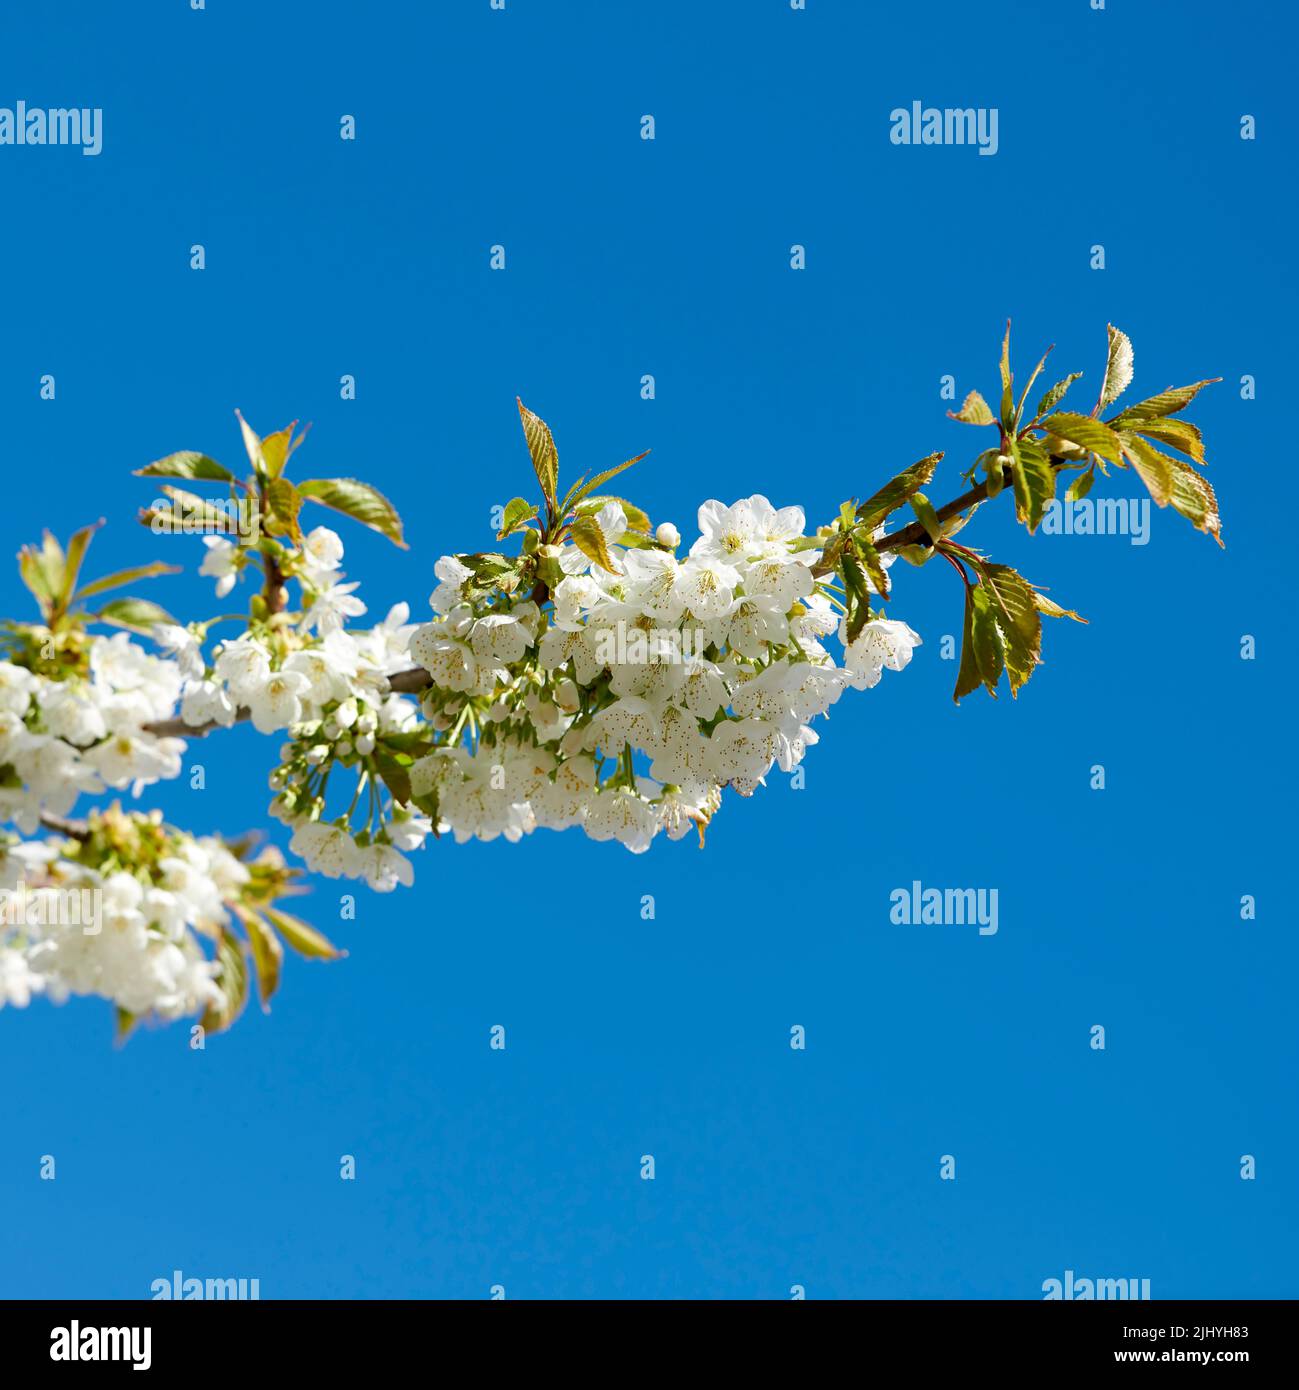 Vista de las flores blancas que crecen en un tallo de cerezo o manzano en un huerto frutal desde arriba. Grupo de delicadas flores frescas y hojas aisladas Foto de stock